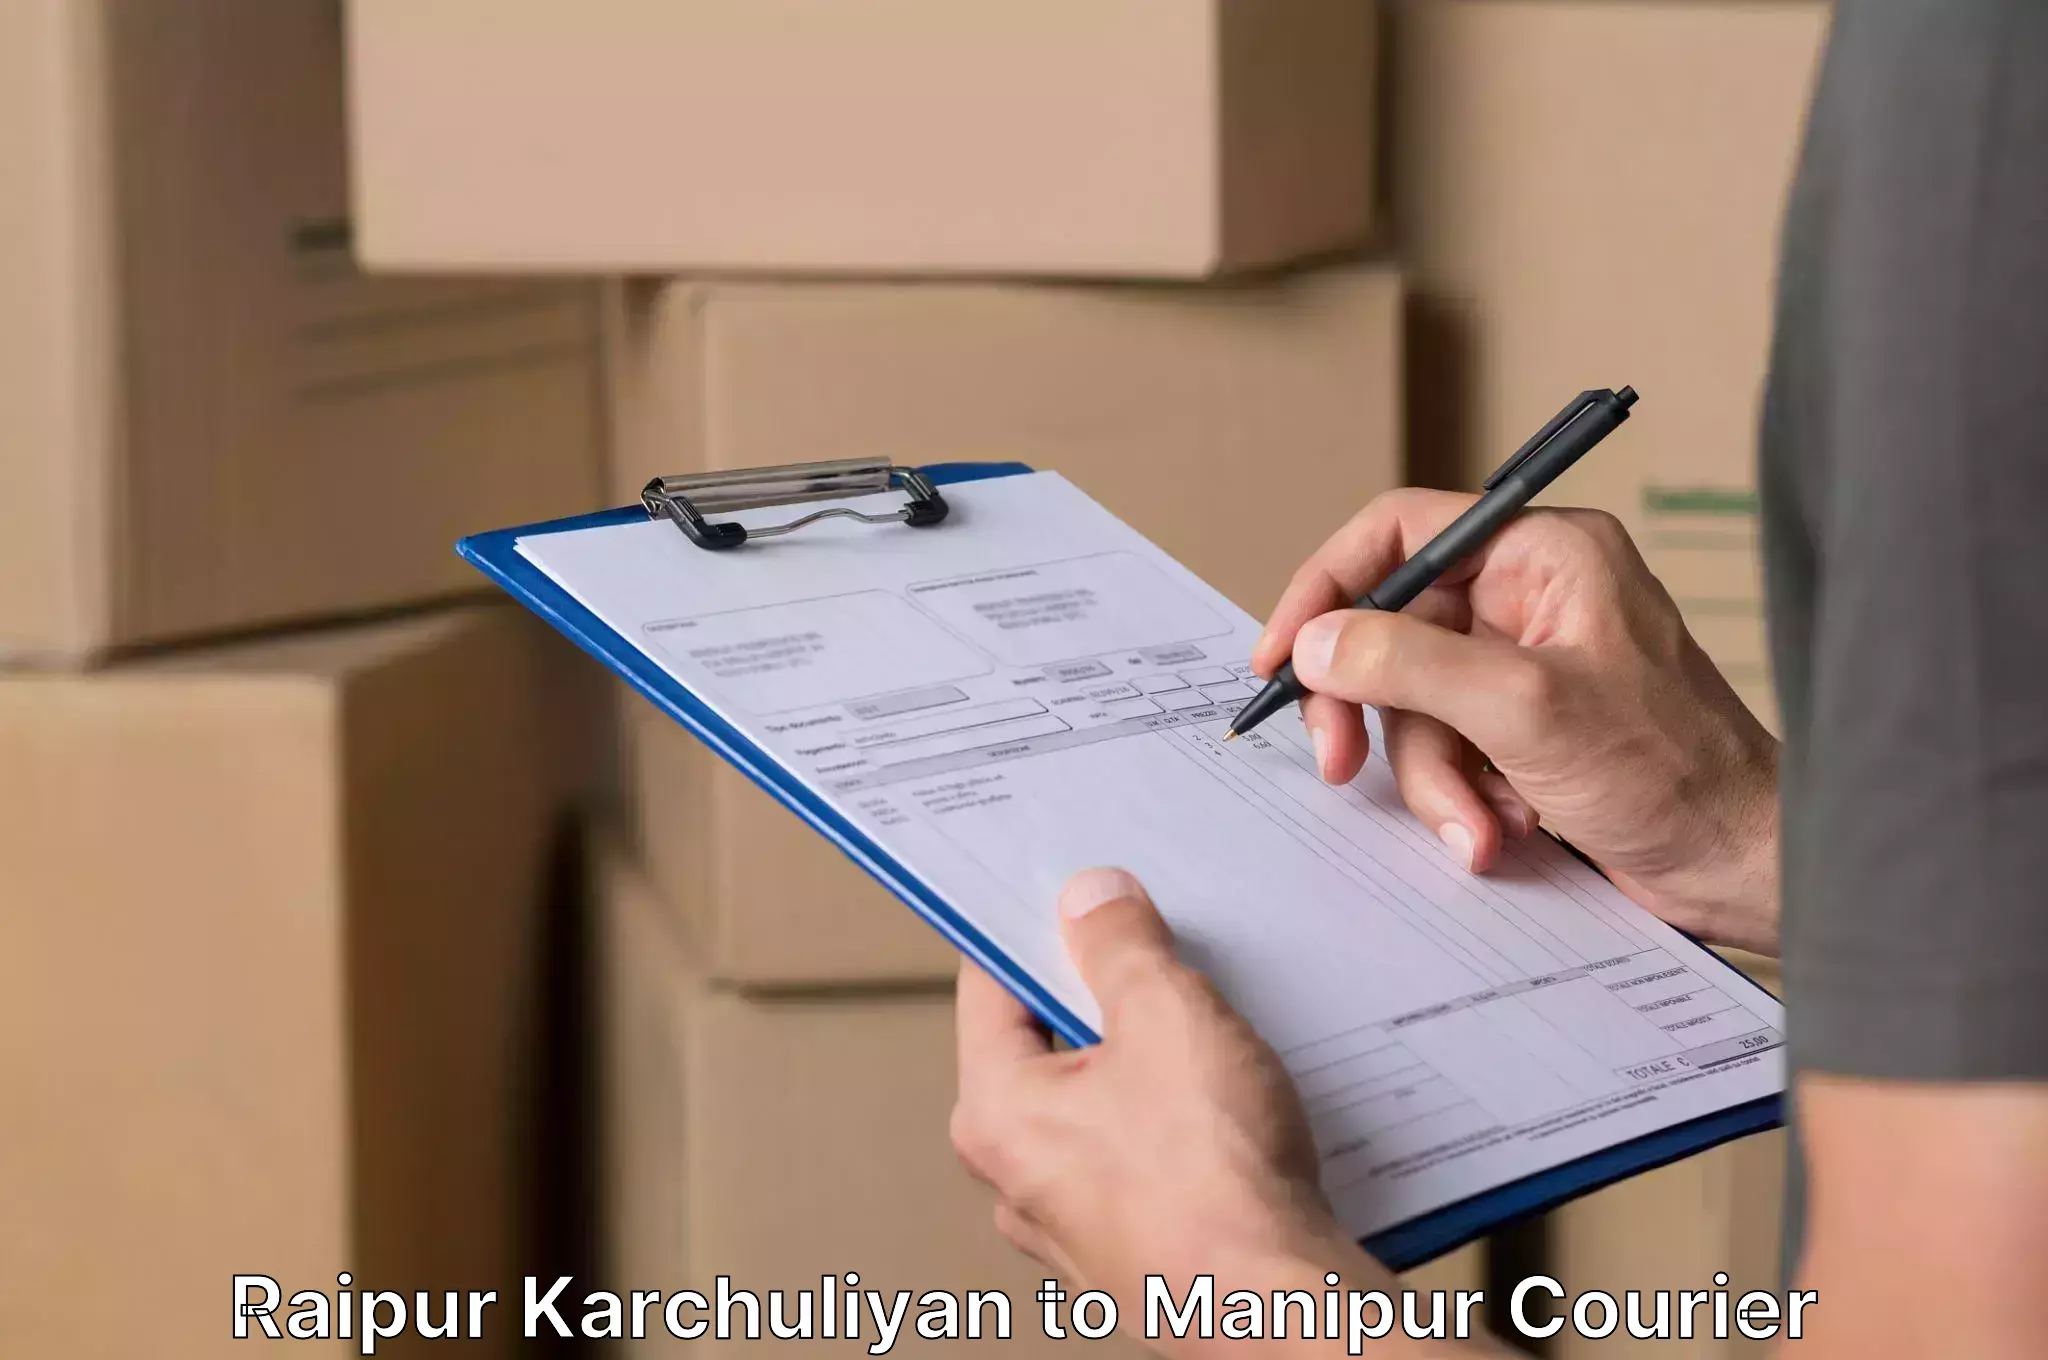 Professional moving company Raipur Karchuliyan to Kanti